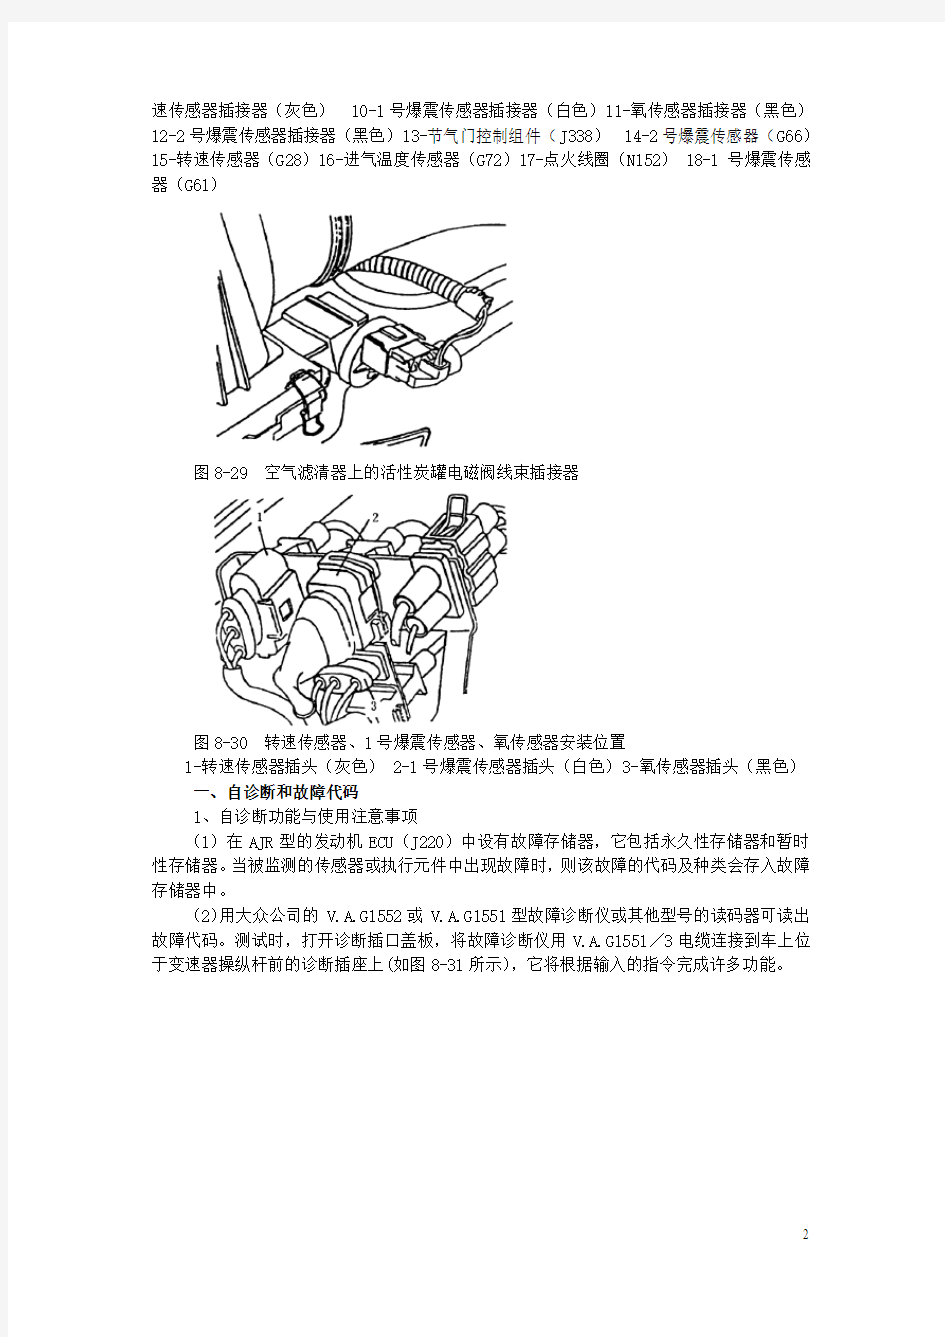 桑塔纳2000GSi型轿车电子控制汽油喷射系统(含点火系)维修手册